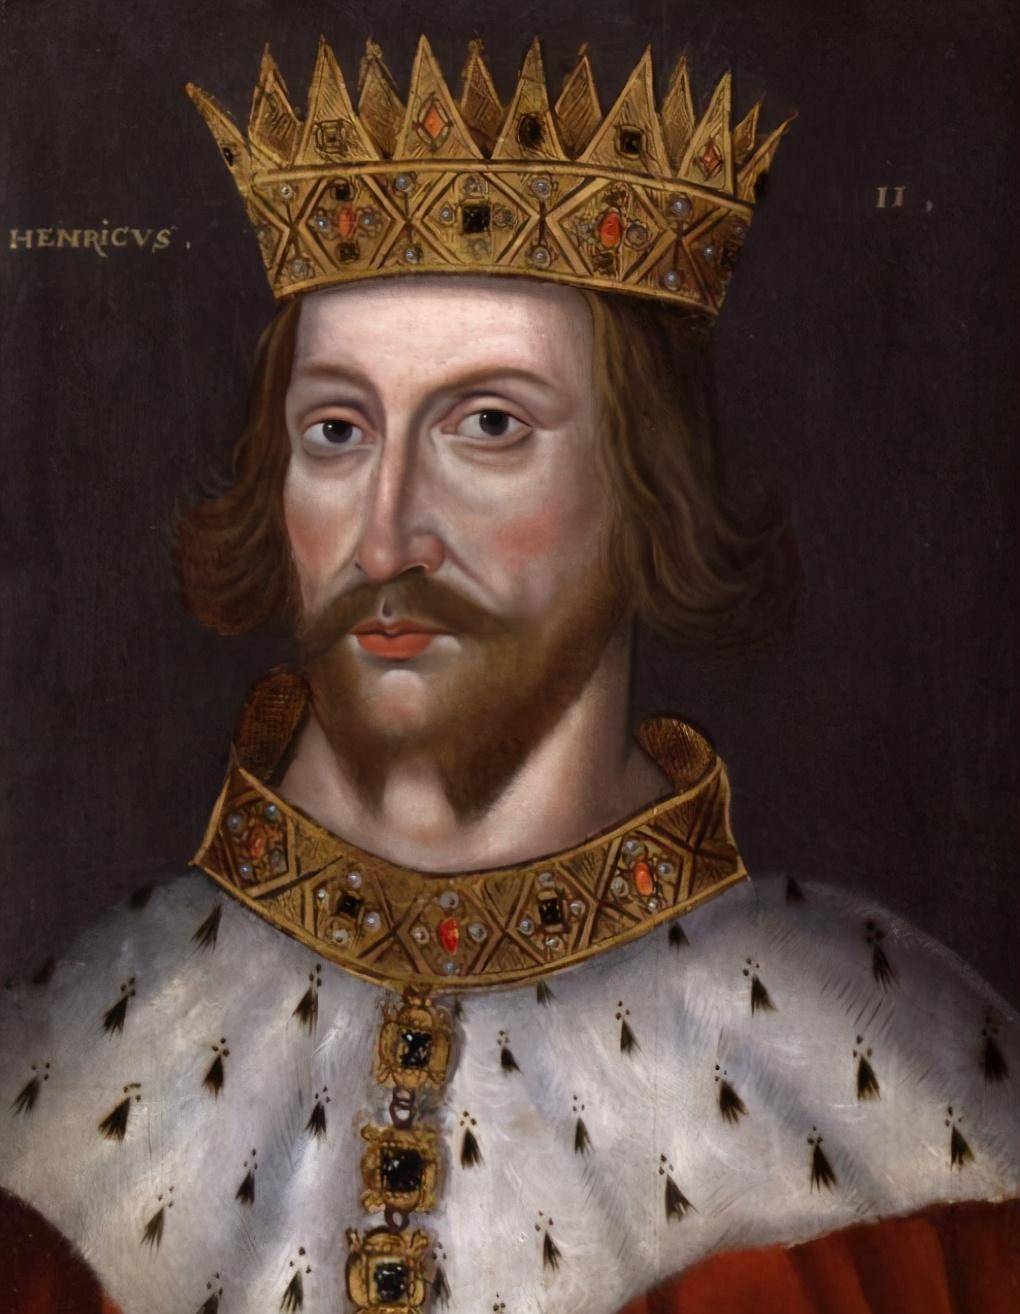 从效忠到敌对,威廉一世征服英格兰后,英王与法王的矛盾剧增